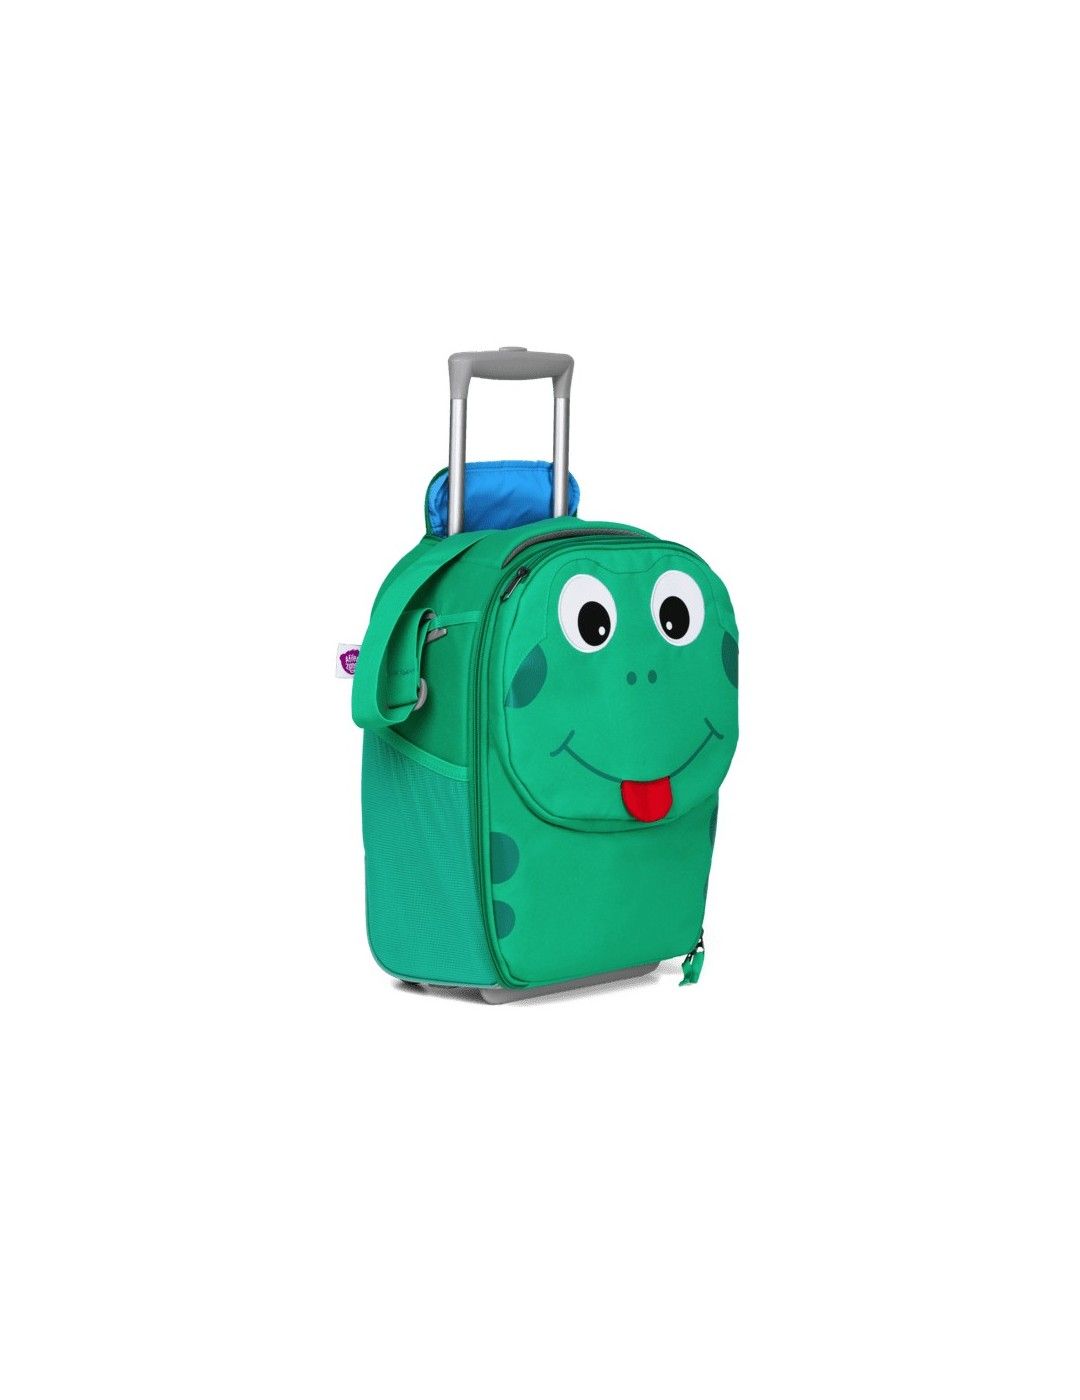 Affenzahn children's suitcase Frog 40cm 2 wheel